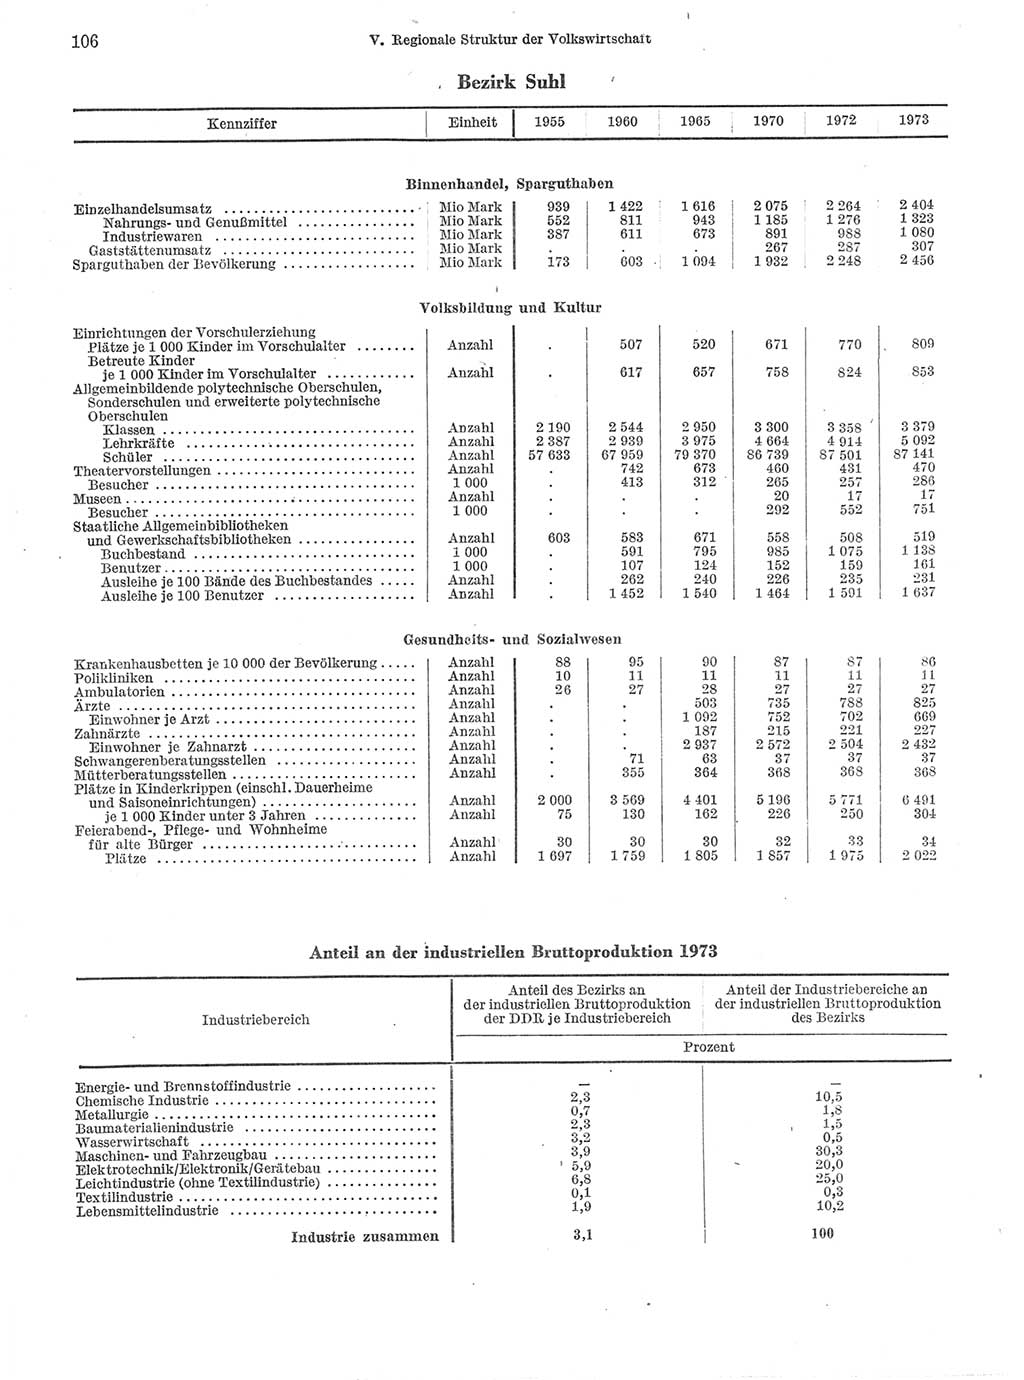 Statistisches Jahrbuch der Deutschen Demokratischen Republik (DDR) 1974, Seite 106 (Stat. Jb. DDR 1974, S. 106)